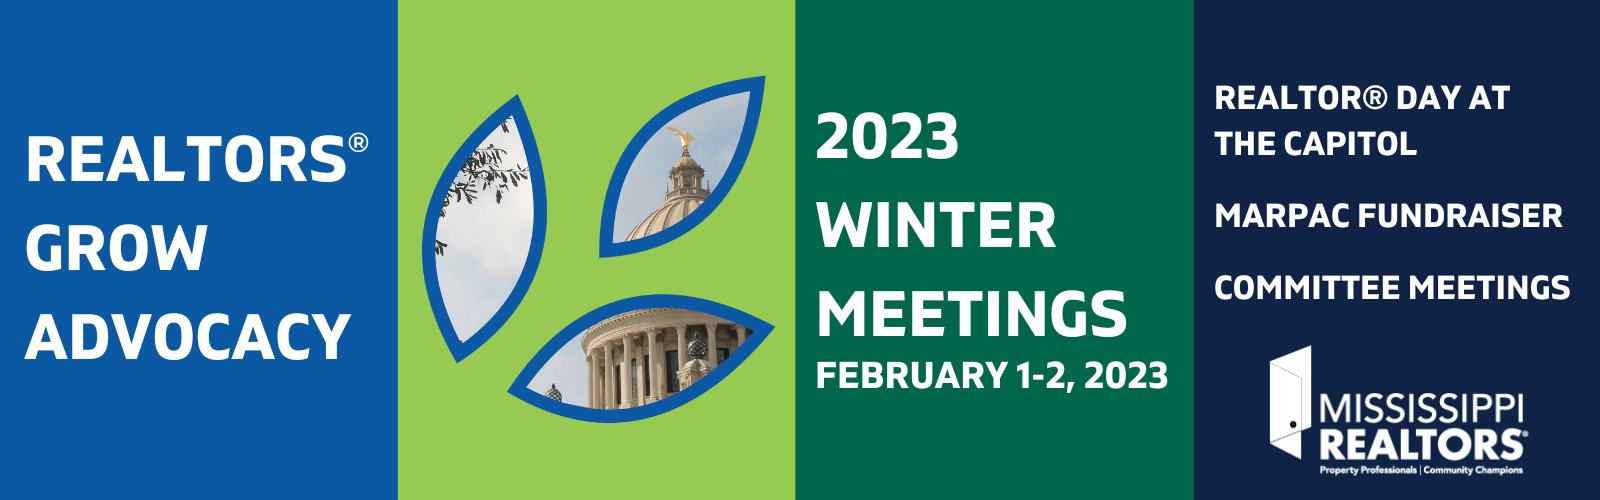 2023 Winter Meeting Schedule